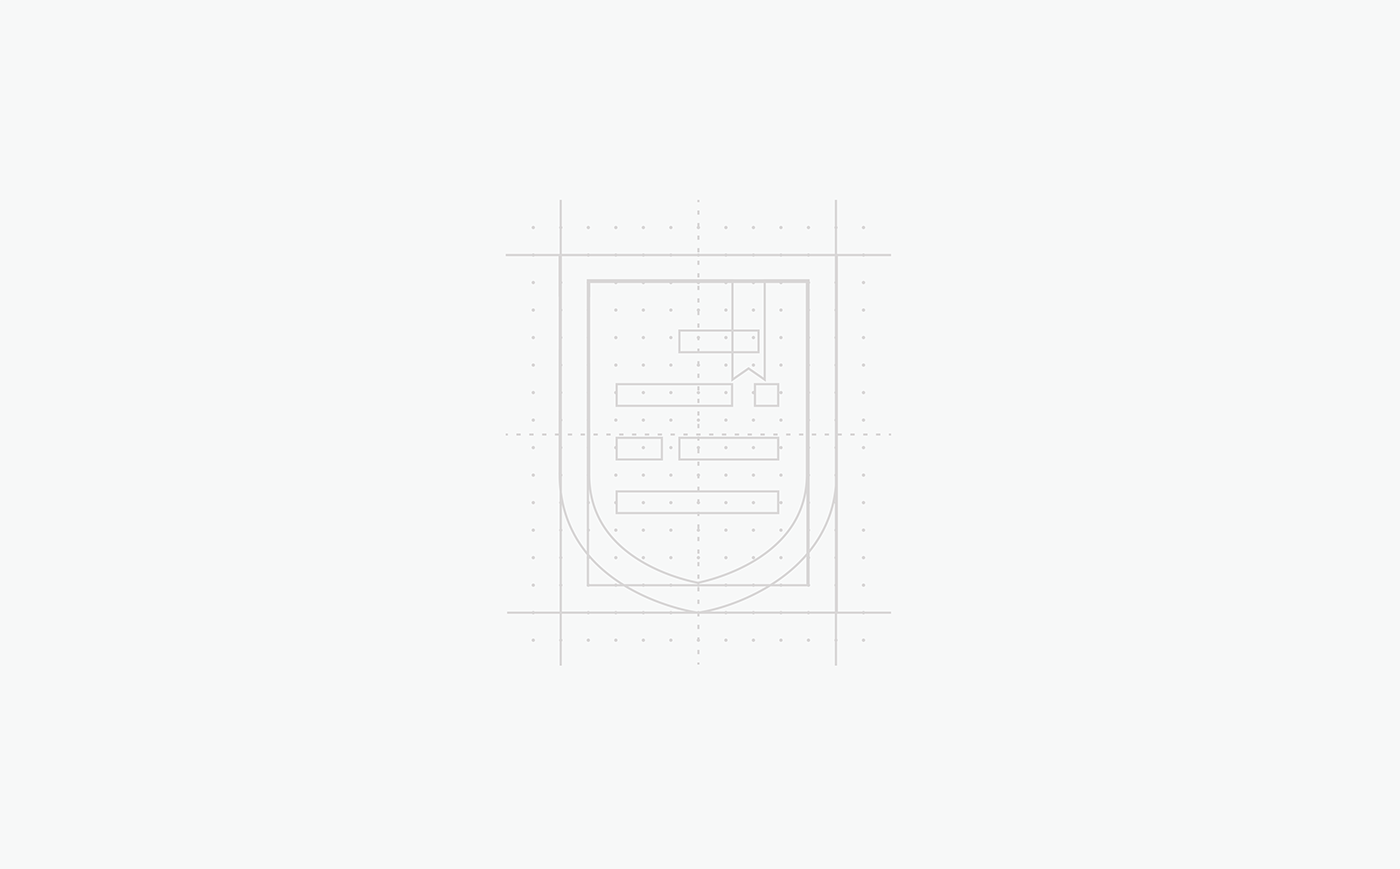 logo Icon visual identity identity rebranding University college karolina kulmatycka olsztyn